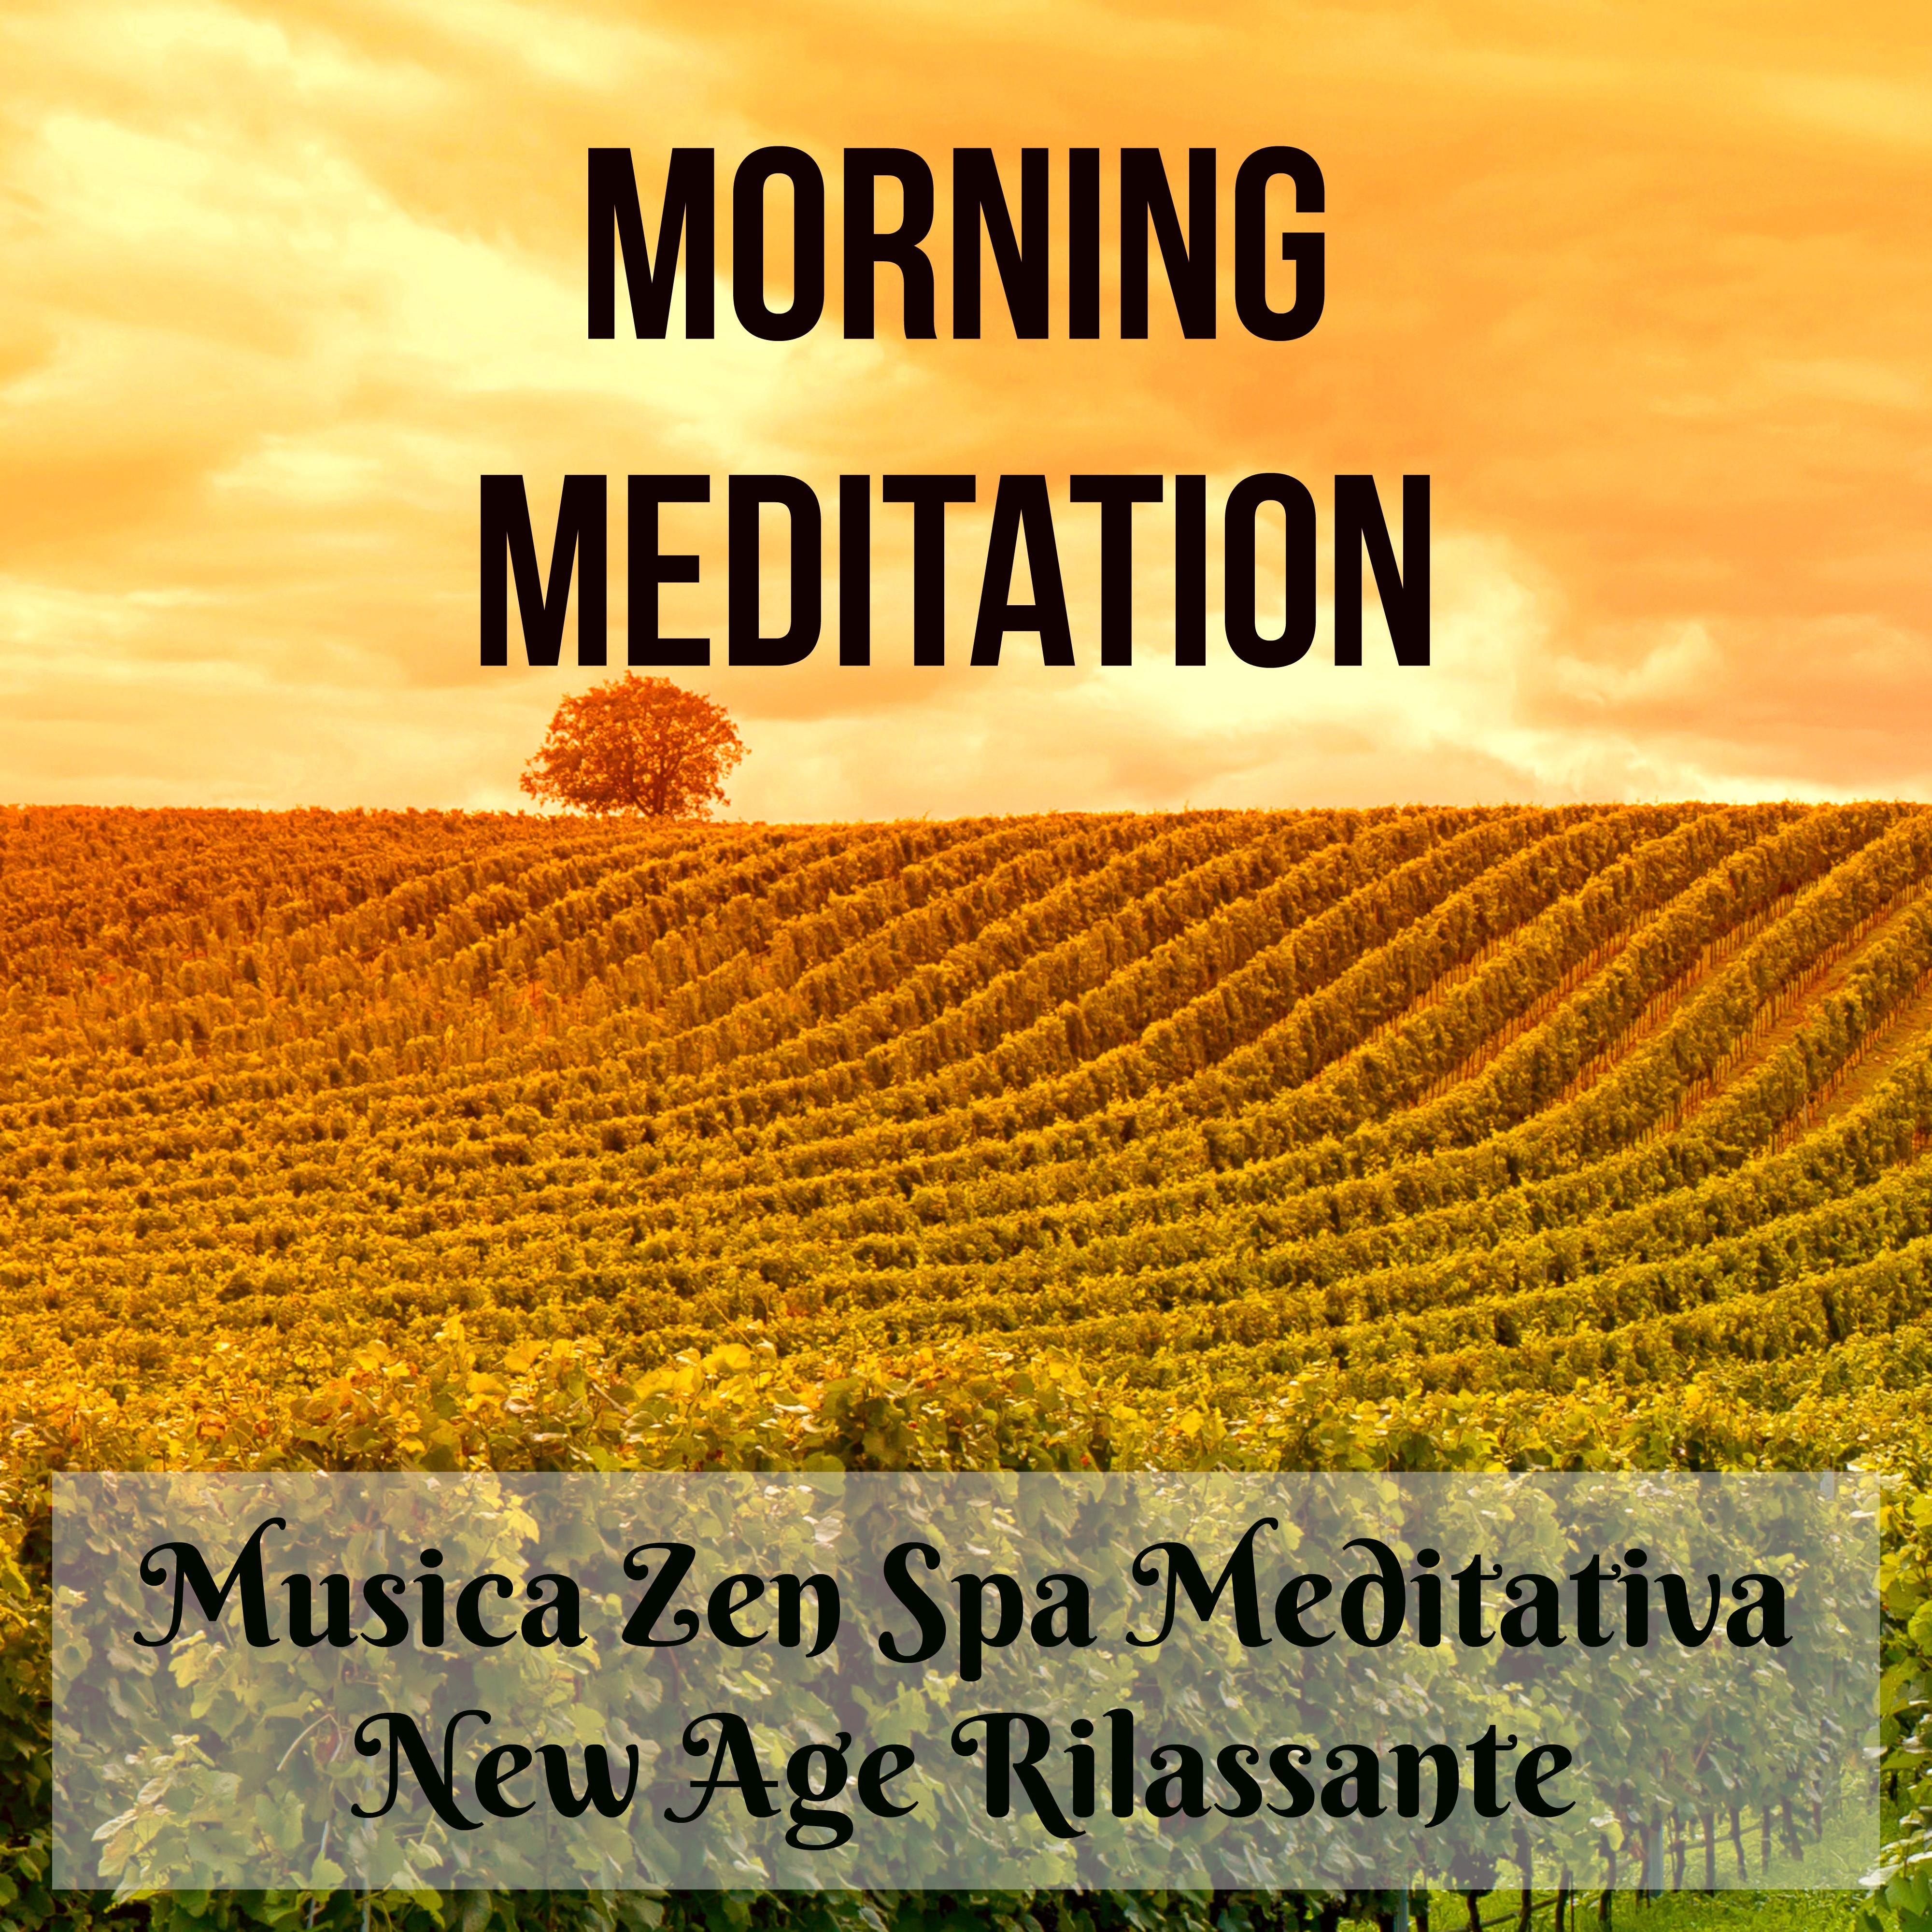 Morning Meditation - Musica Zen Spa Meditativa dalla Natura New Age Rilassante per Pensieri Positivi Salute e Benessere Potere della Mente